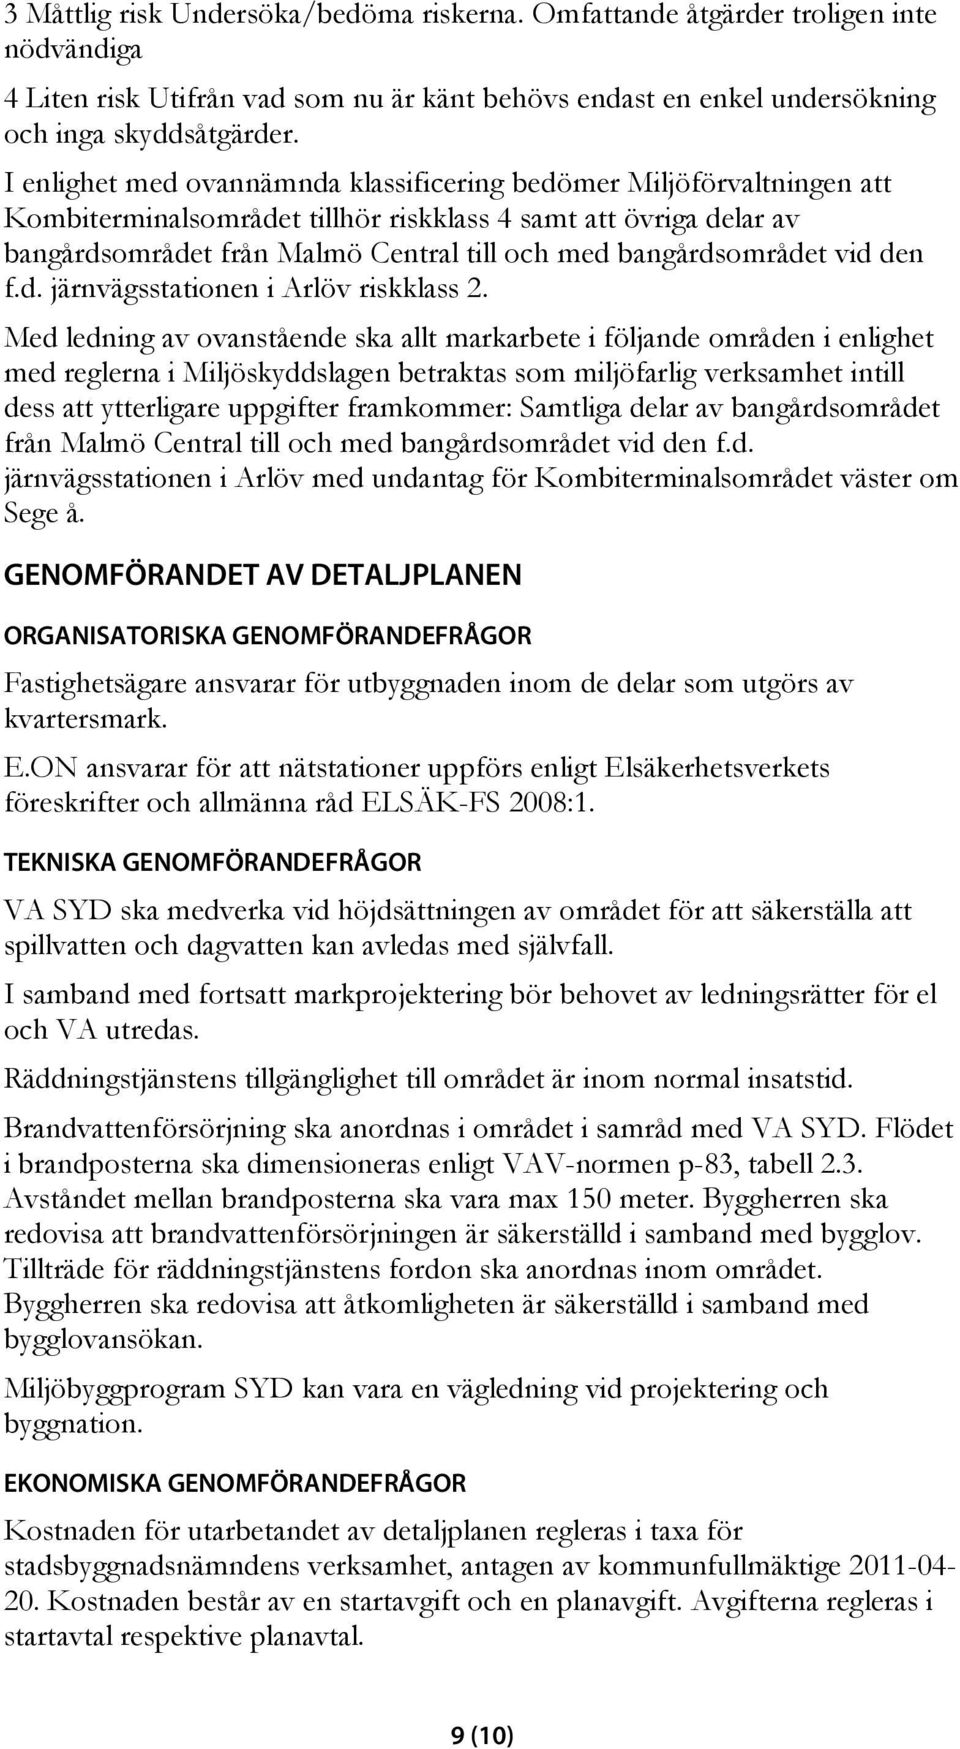 bangårdsområdet vid den f.d. järnvägsstationen i Arlöv riskklass 2.